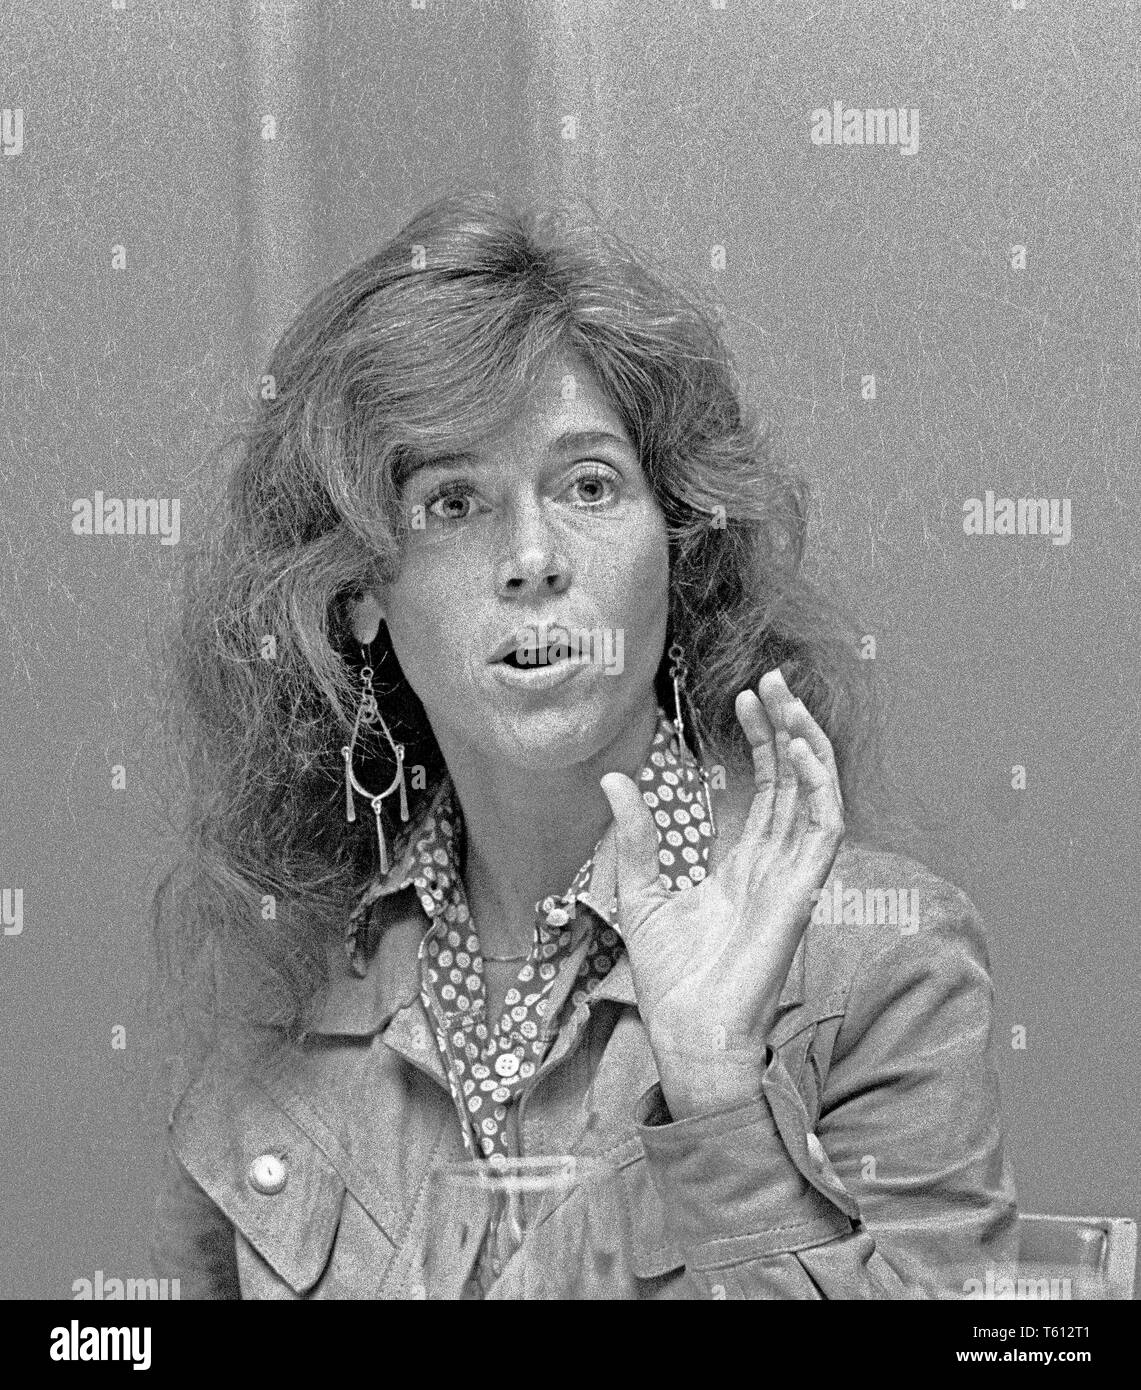 Actress, Jane Fonda, October 17, 1977, California Stock Photo